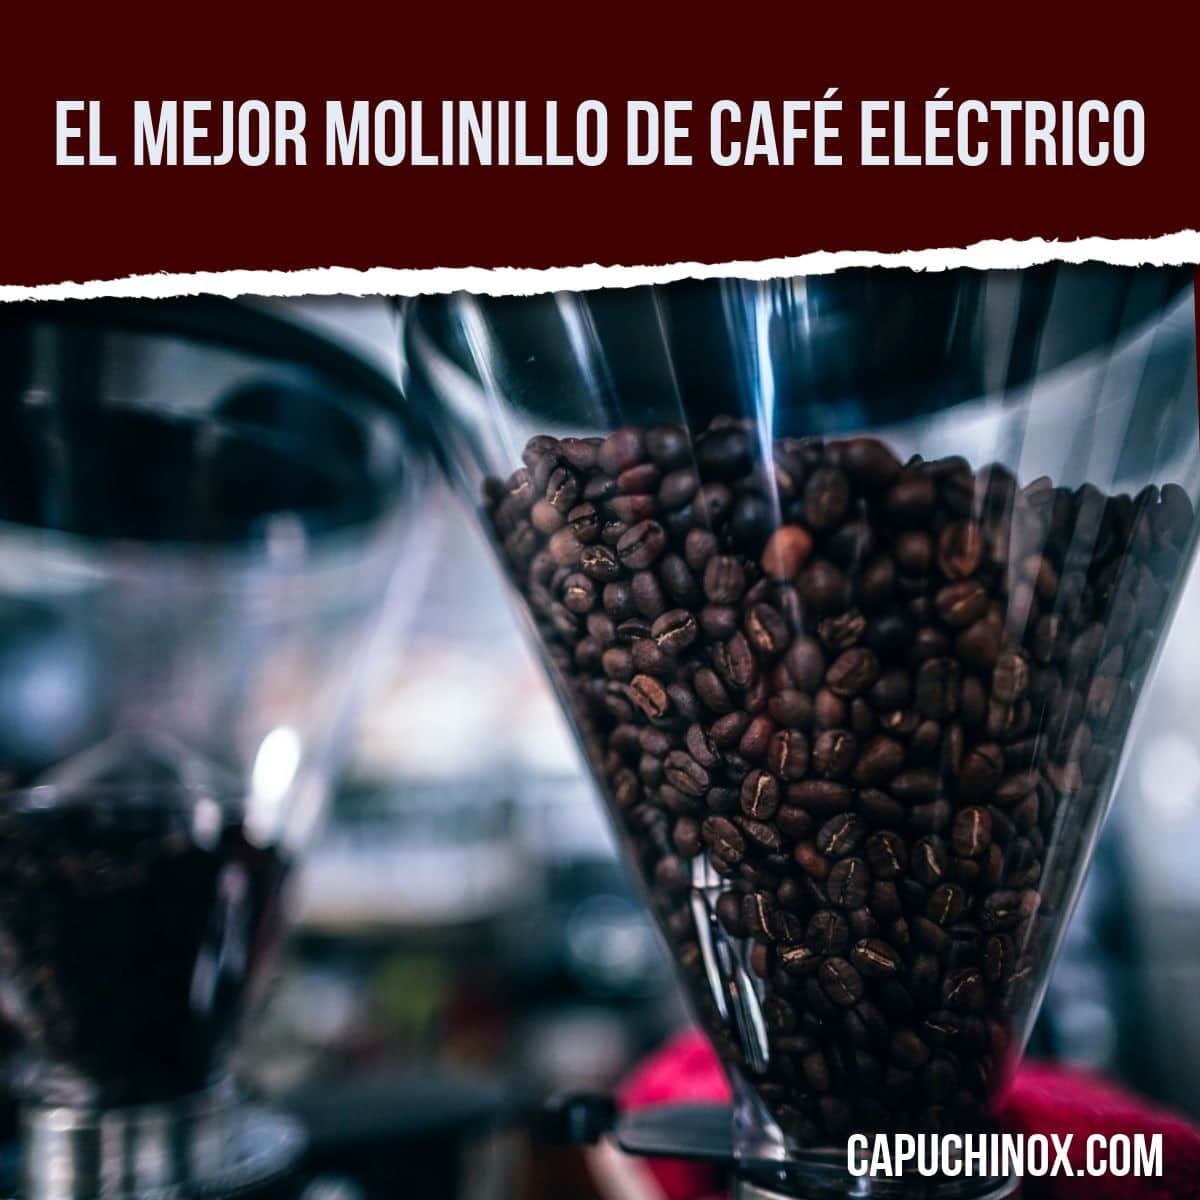 El mejor molinillo de café eléctrico